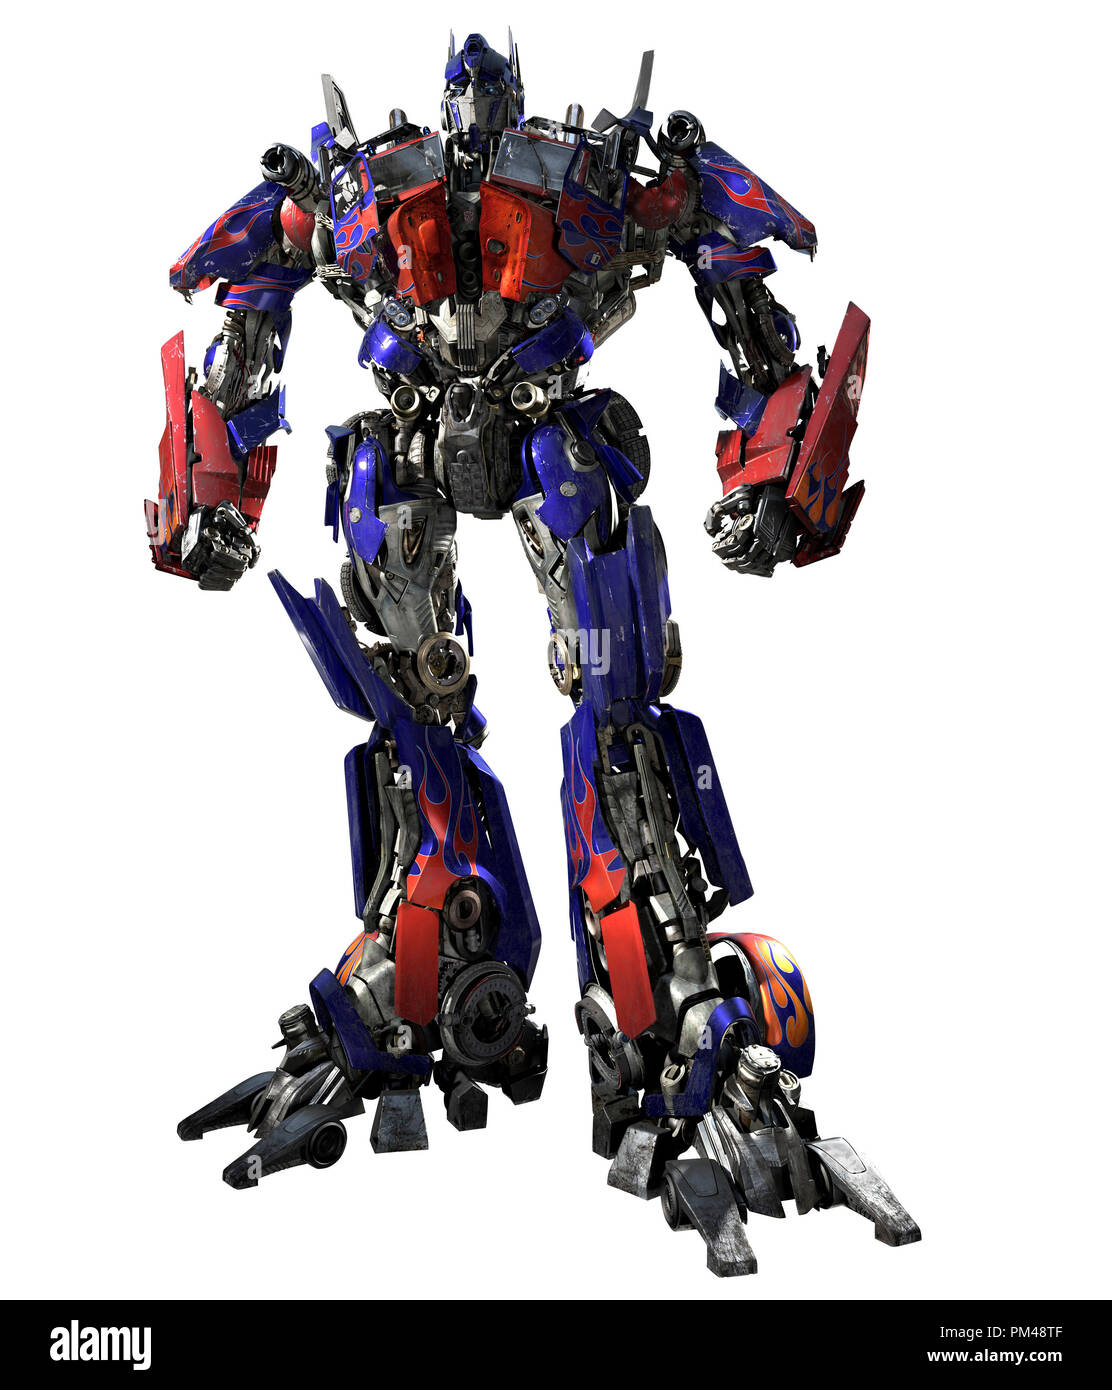 Imagenes de transformers optimus prime